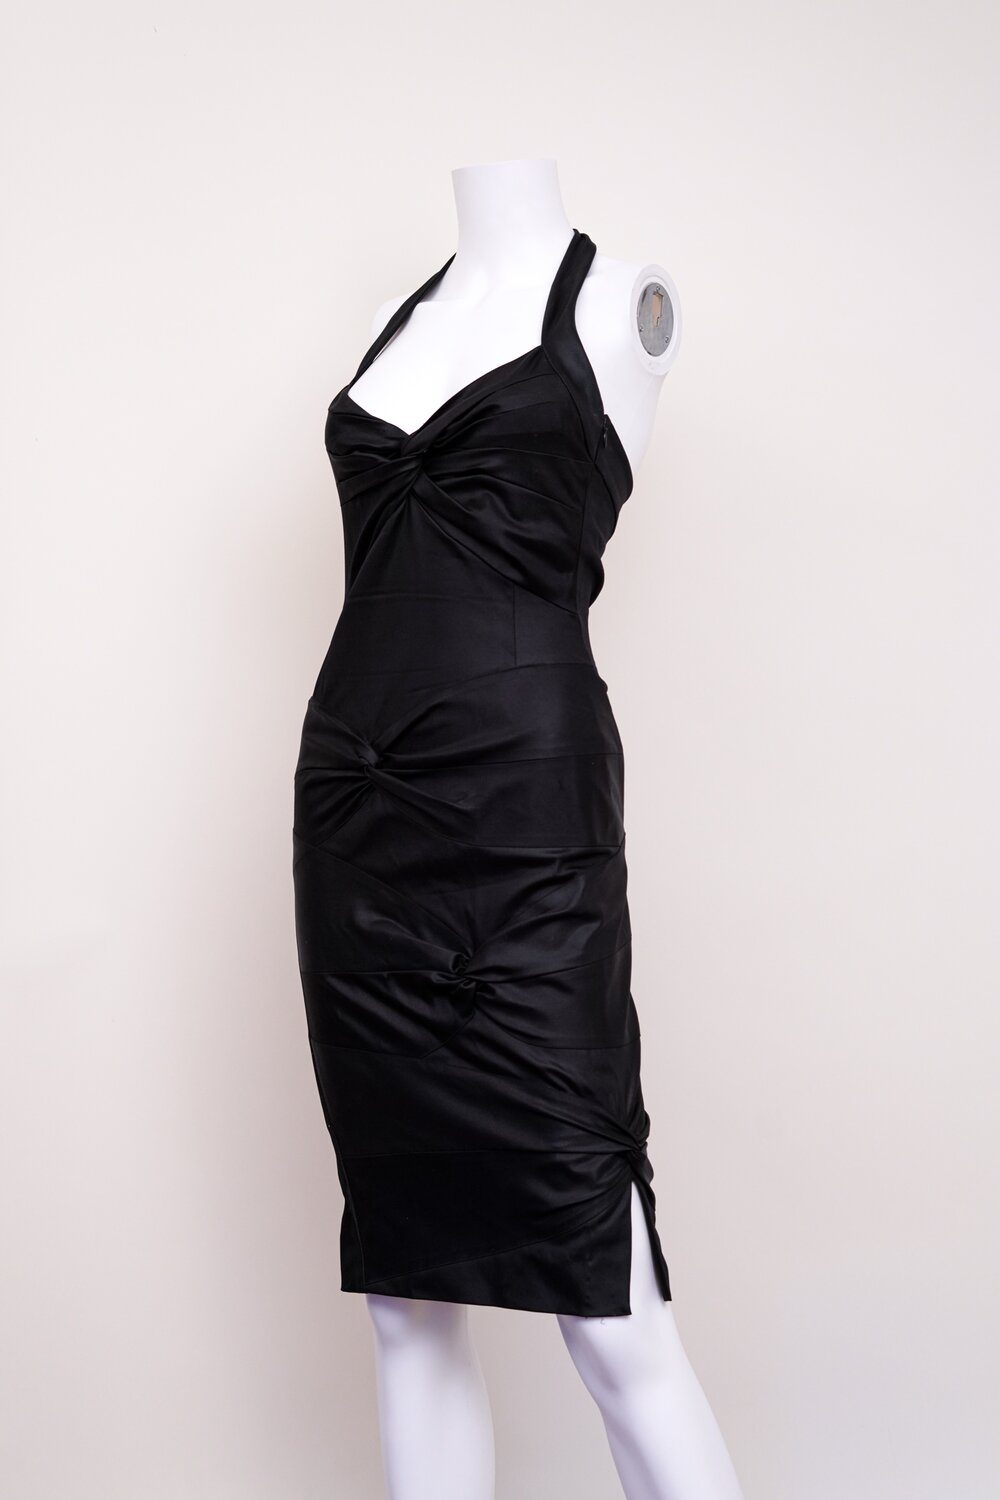 Christian Dior Ruched Black Halter Dress — God of Cloth